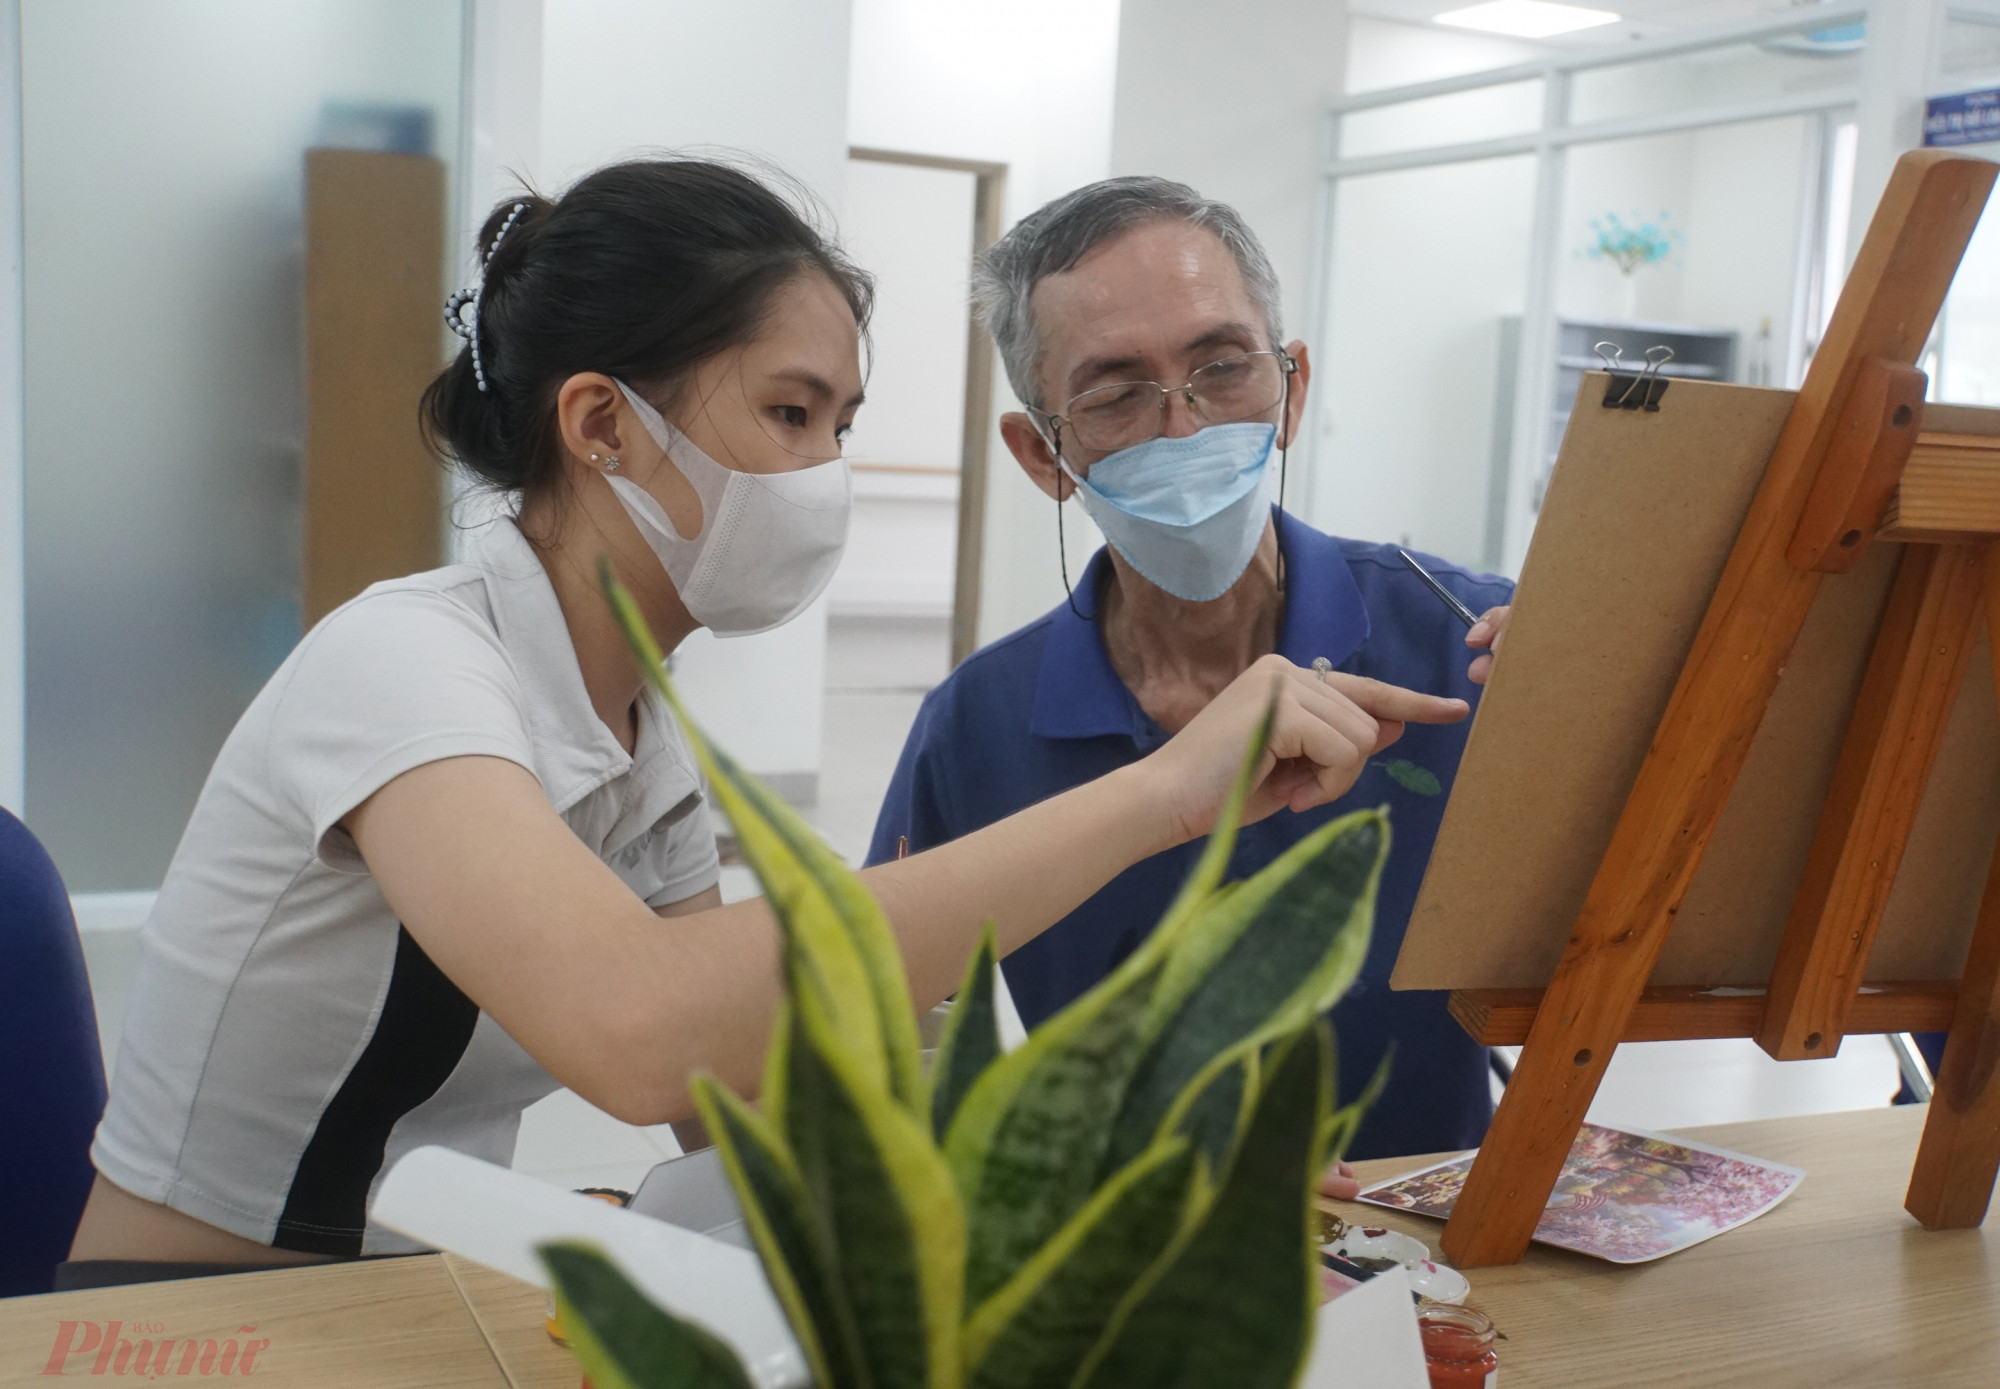 Ngoài kỹ thuật viên, bác sĩ vật lý trị liệu, các bạn sinh viên tại trường Đại học Kiến trúc TPHCM, Đại học Sài Gòn cũng đến khoa hướng dẫn các kỹ thuật cơ bản trong hội họa cho người bệnh